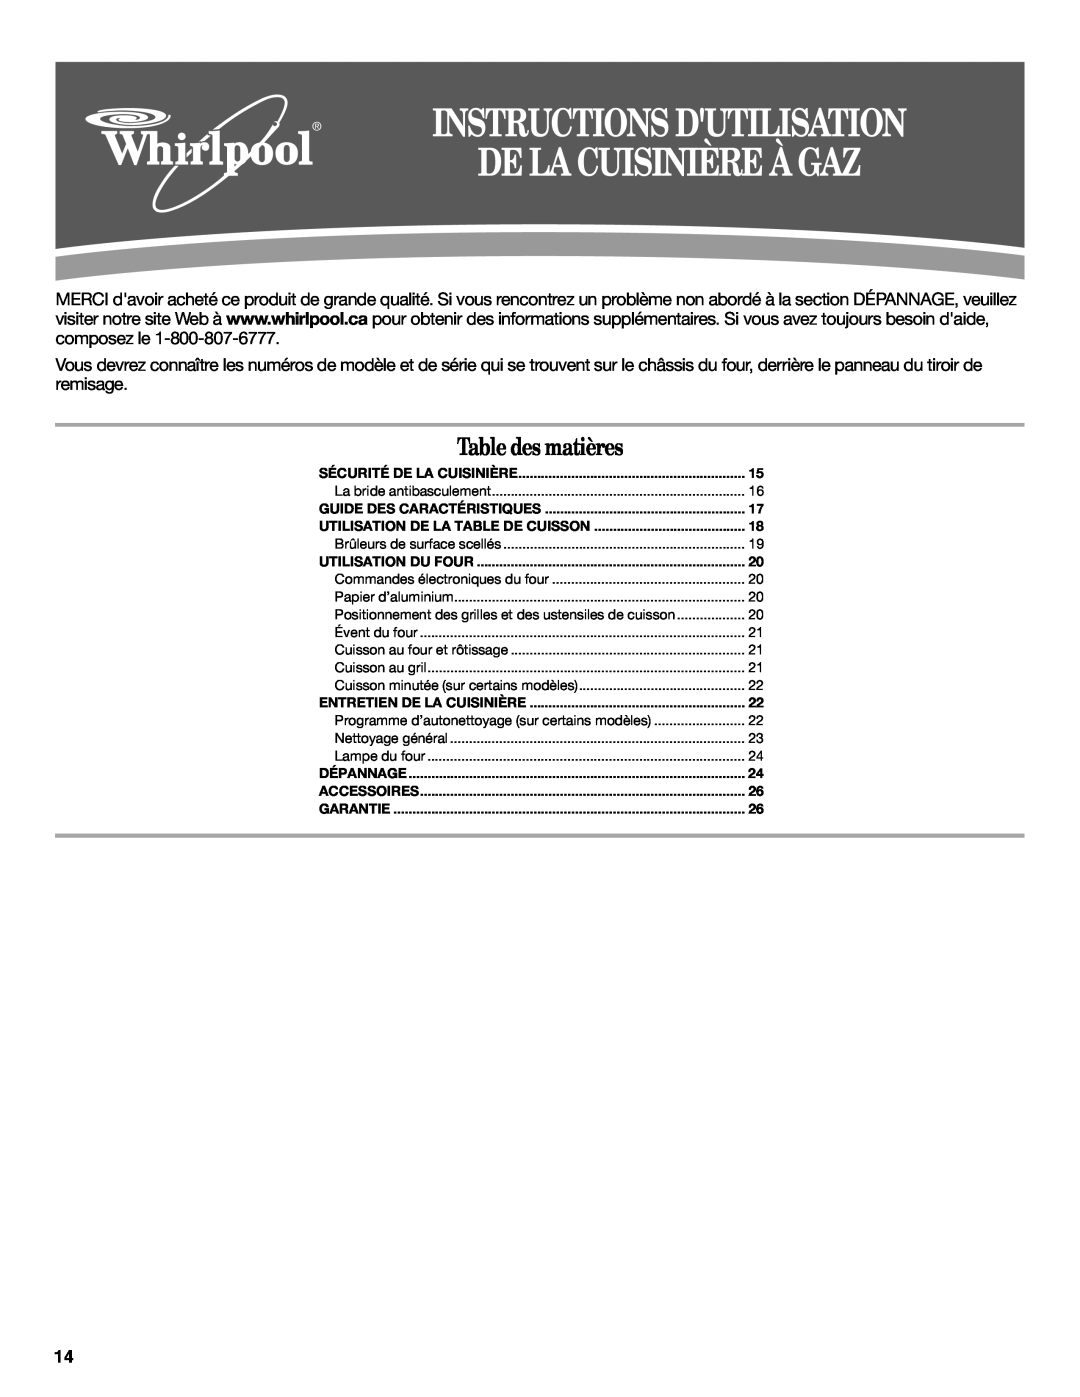 Whirlpool W10196152B Instructions Dutilisation, De La Cuisinière À Gaz, Table des matières, Guide Des Caractéristiques 